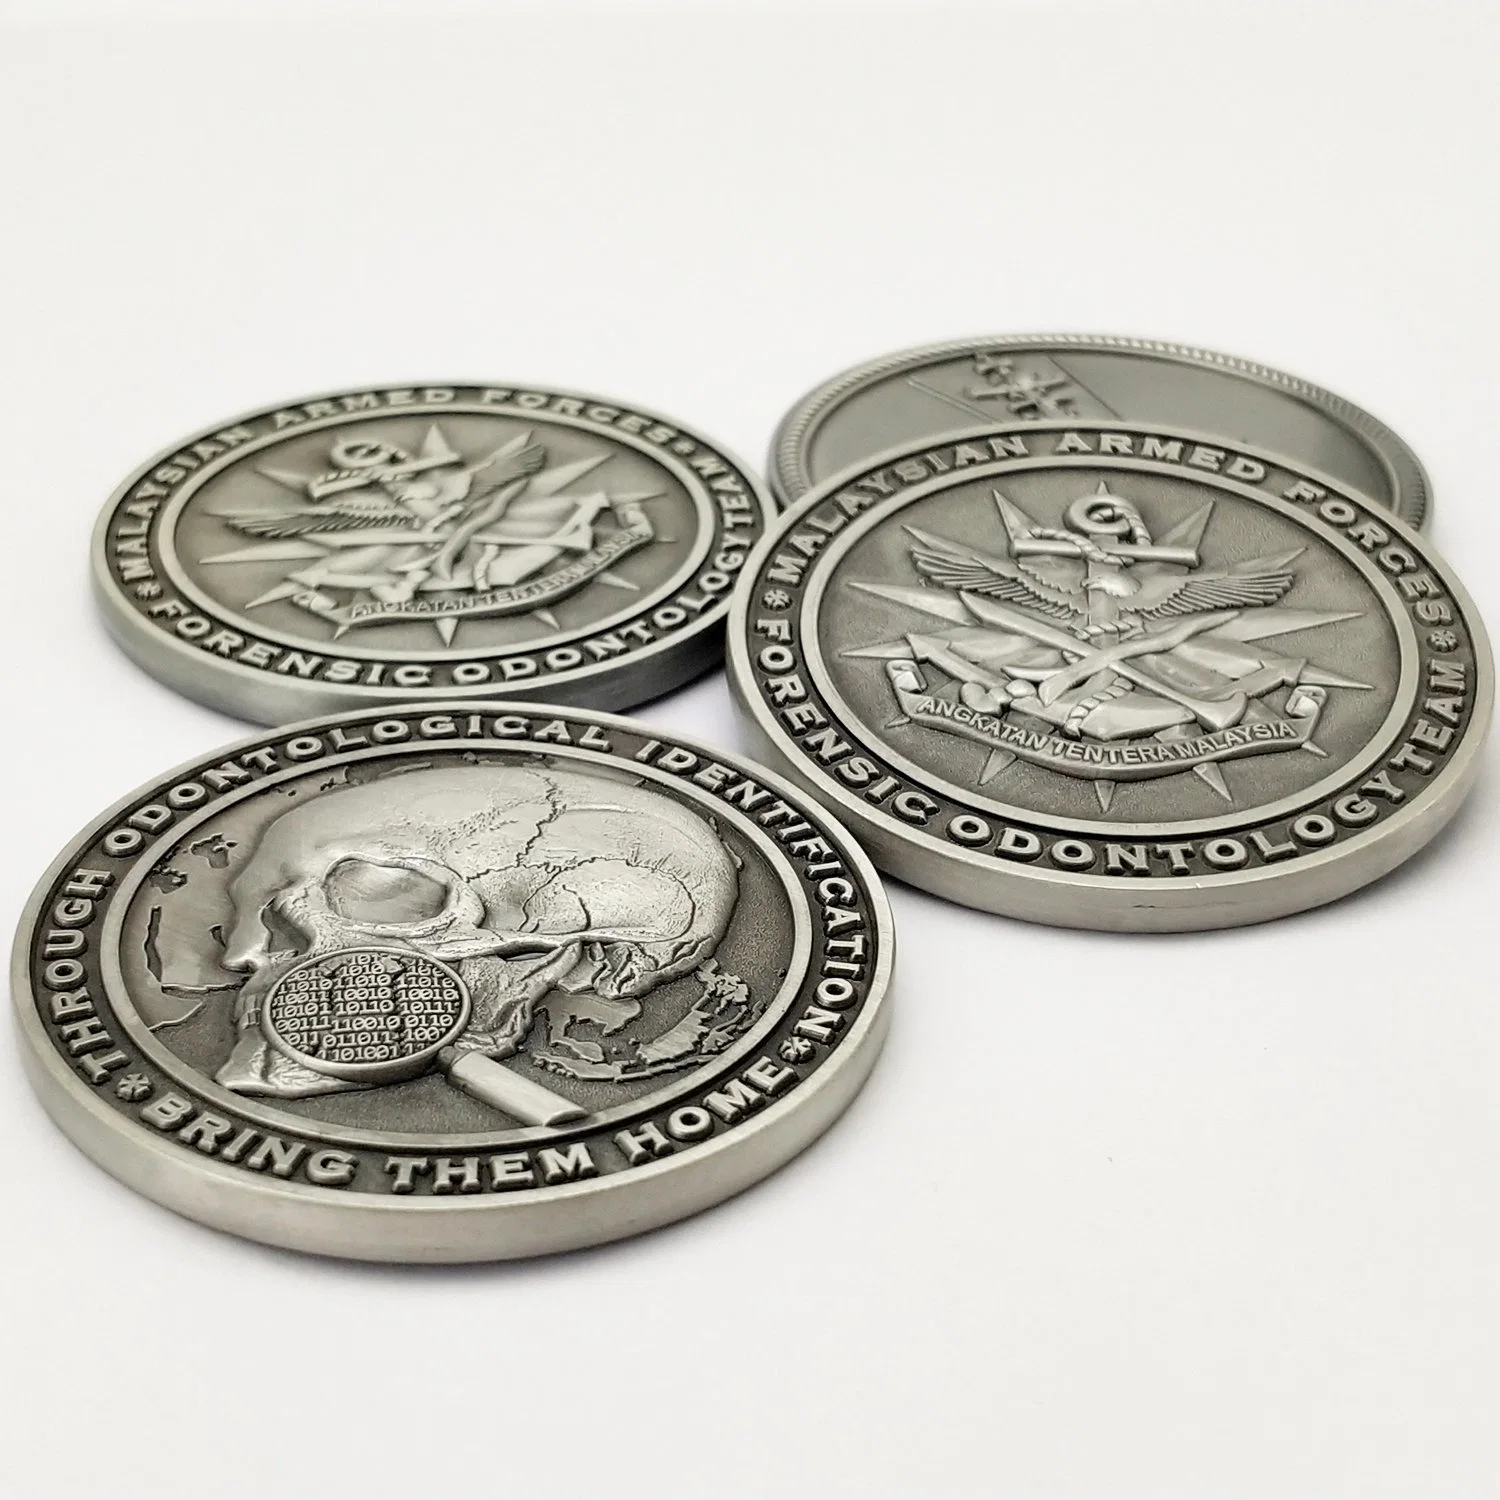 A fábrica de metais personalizados Artesanato Logotipo cranio Loja Moedas Honra Militar Desafio Visor de moedas de colecção &#160;